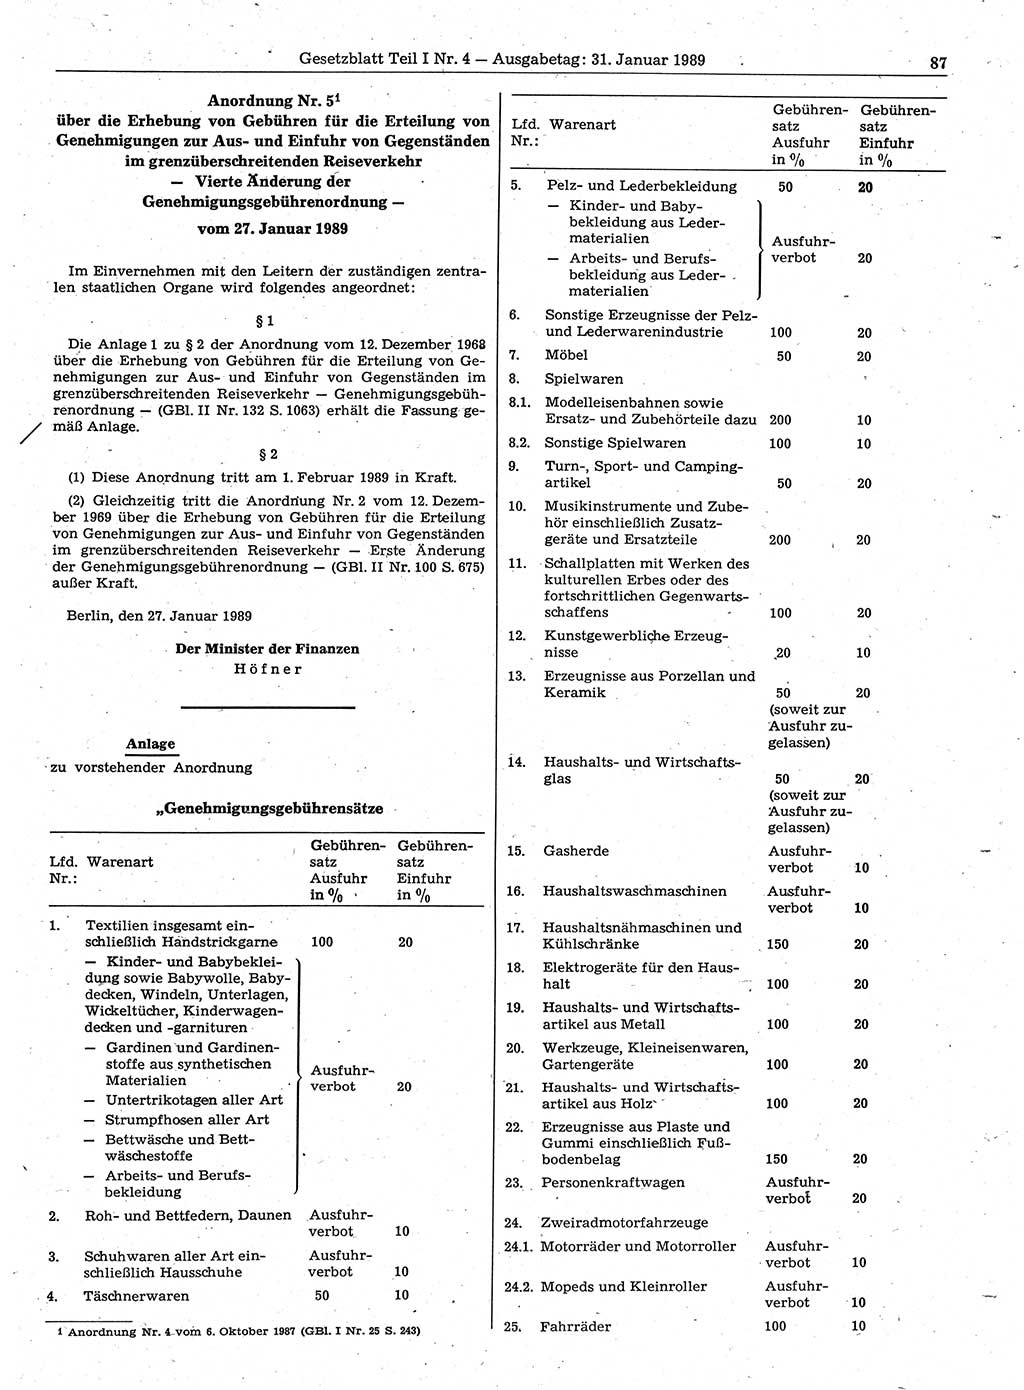 Gesetzblatt (GBl.) der Deutschen Demokratischen Republik (DDR) Teil Ⅰ 1989, Seite 87 (GBl. DDR Ⅰ 1989, S. 87)